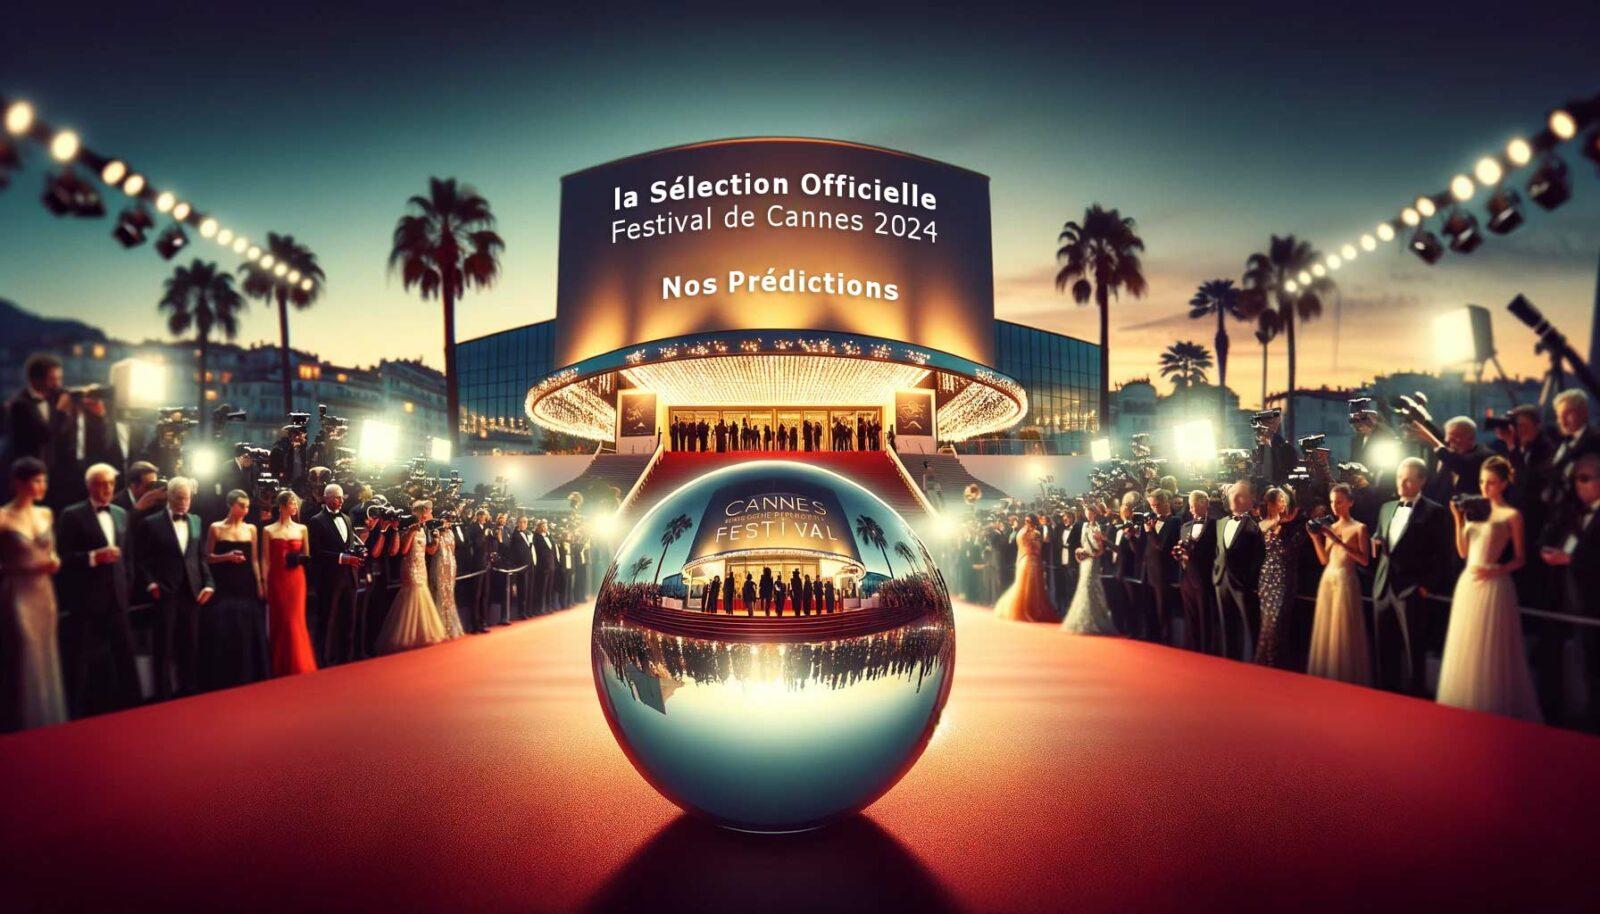 la Sélection Officielle - Festival de Cannes 2024 nos Prédictions en exclu !